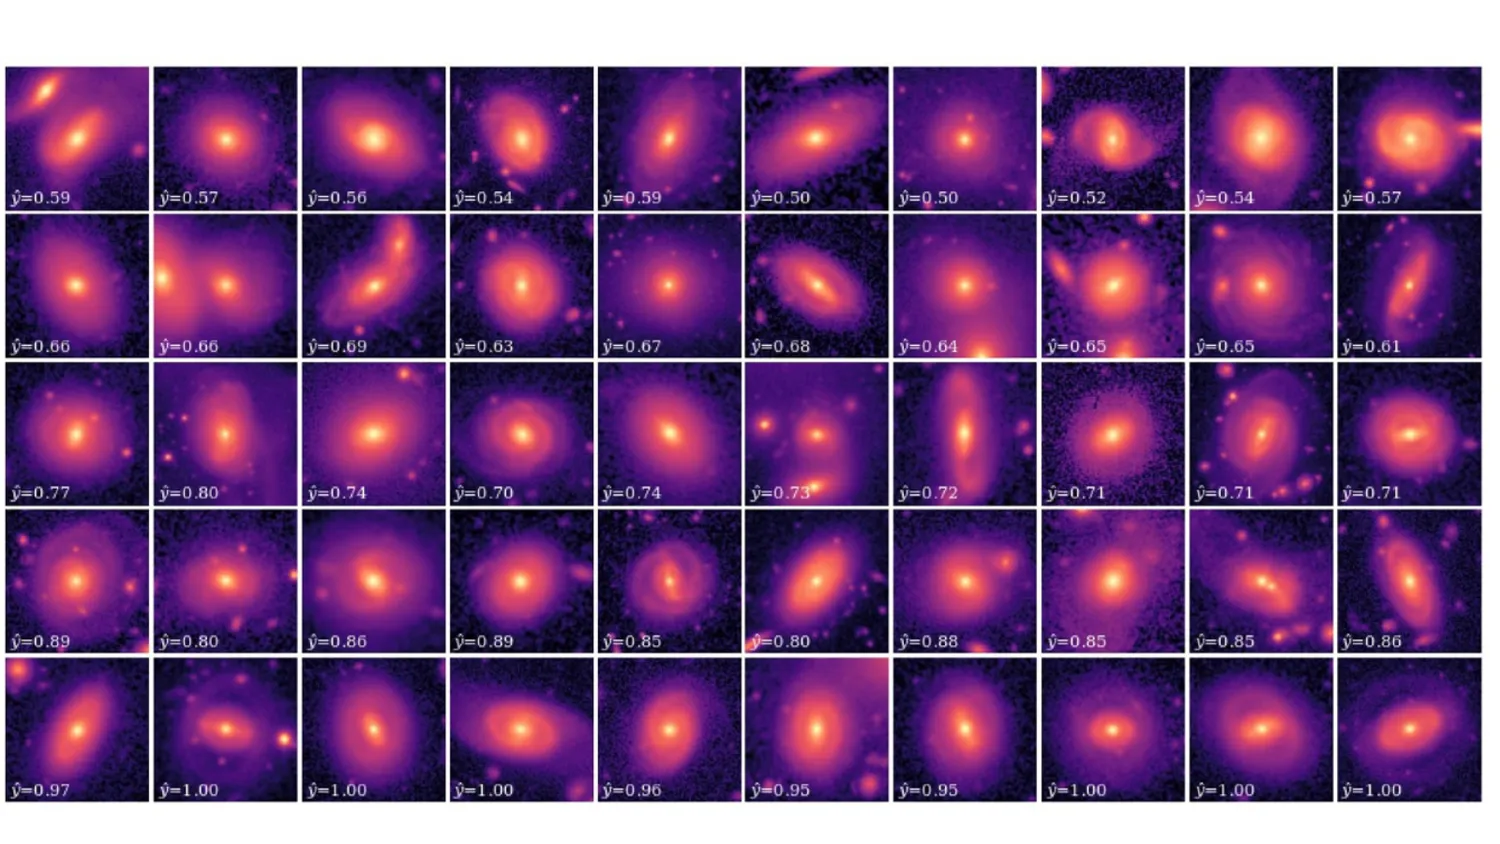 Viele kleine Quadrate, die jeweils eine der neu gefundenen ringförmigen Galaxien darstellen. Durch die von den Wissenschaftlern verwendeten Filter sind sie alle rosa gefärbt.